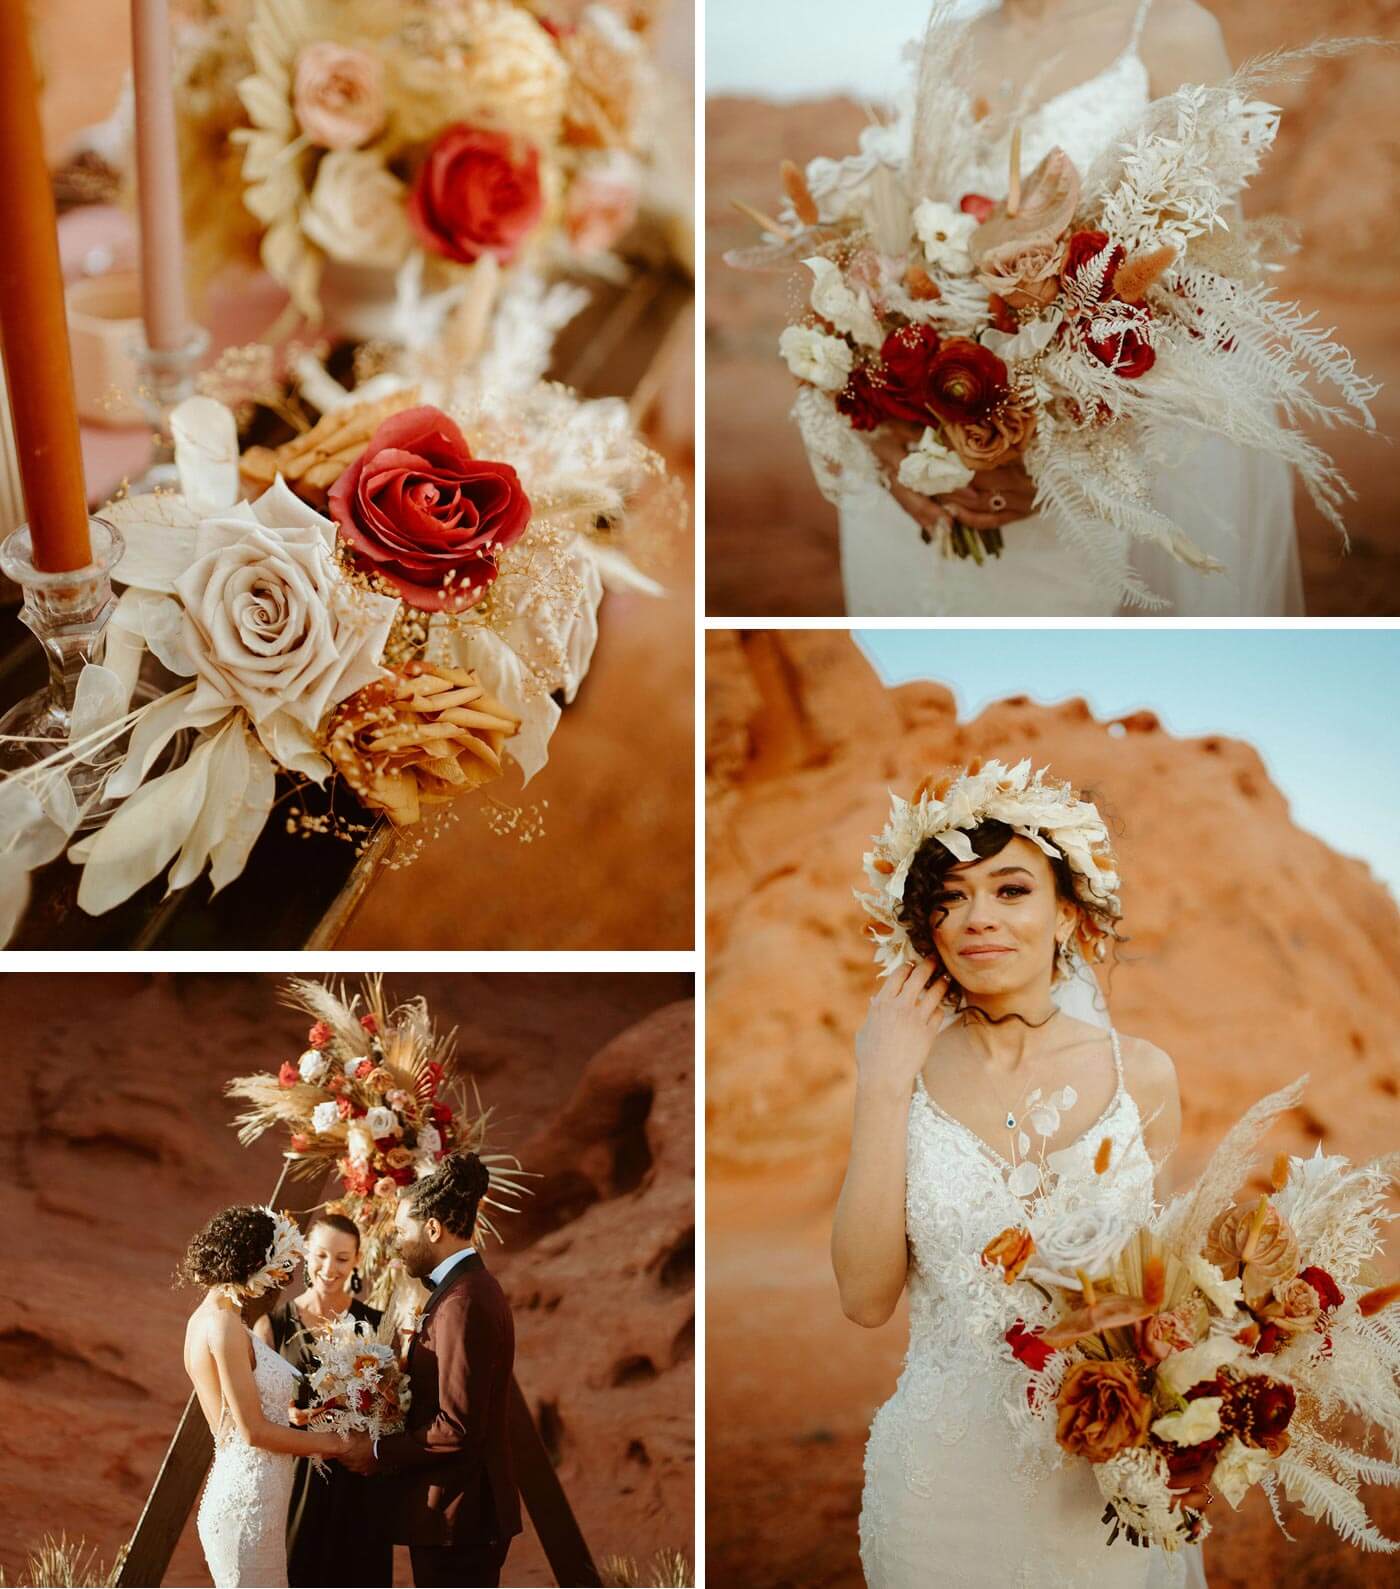 Brautstrauß mit Trockenblumen